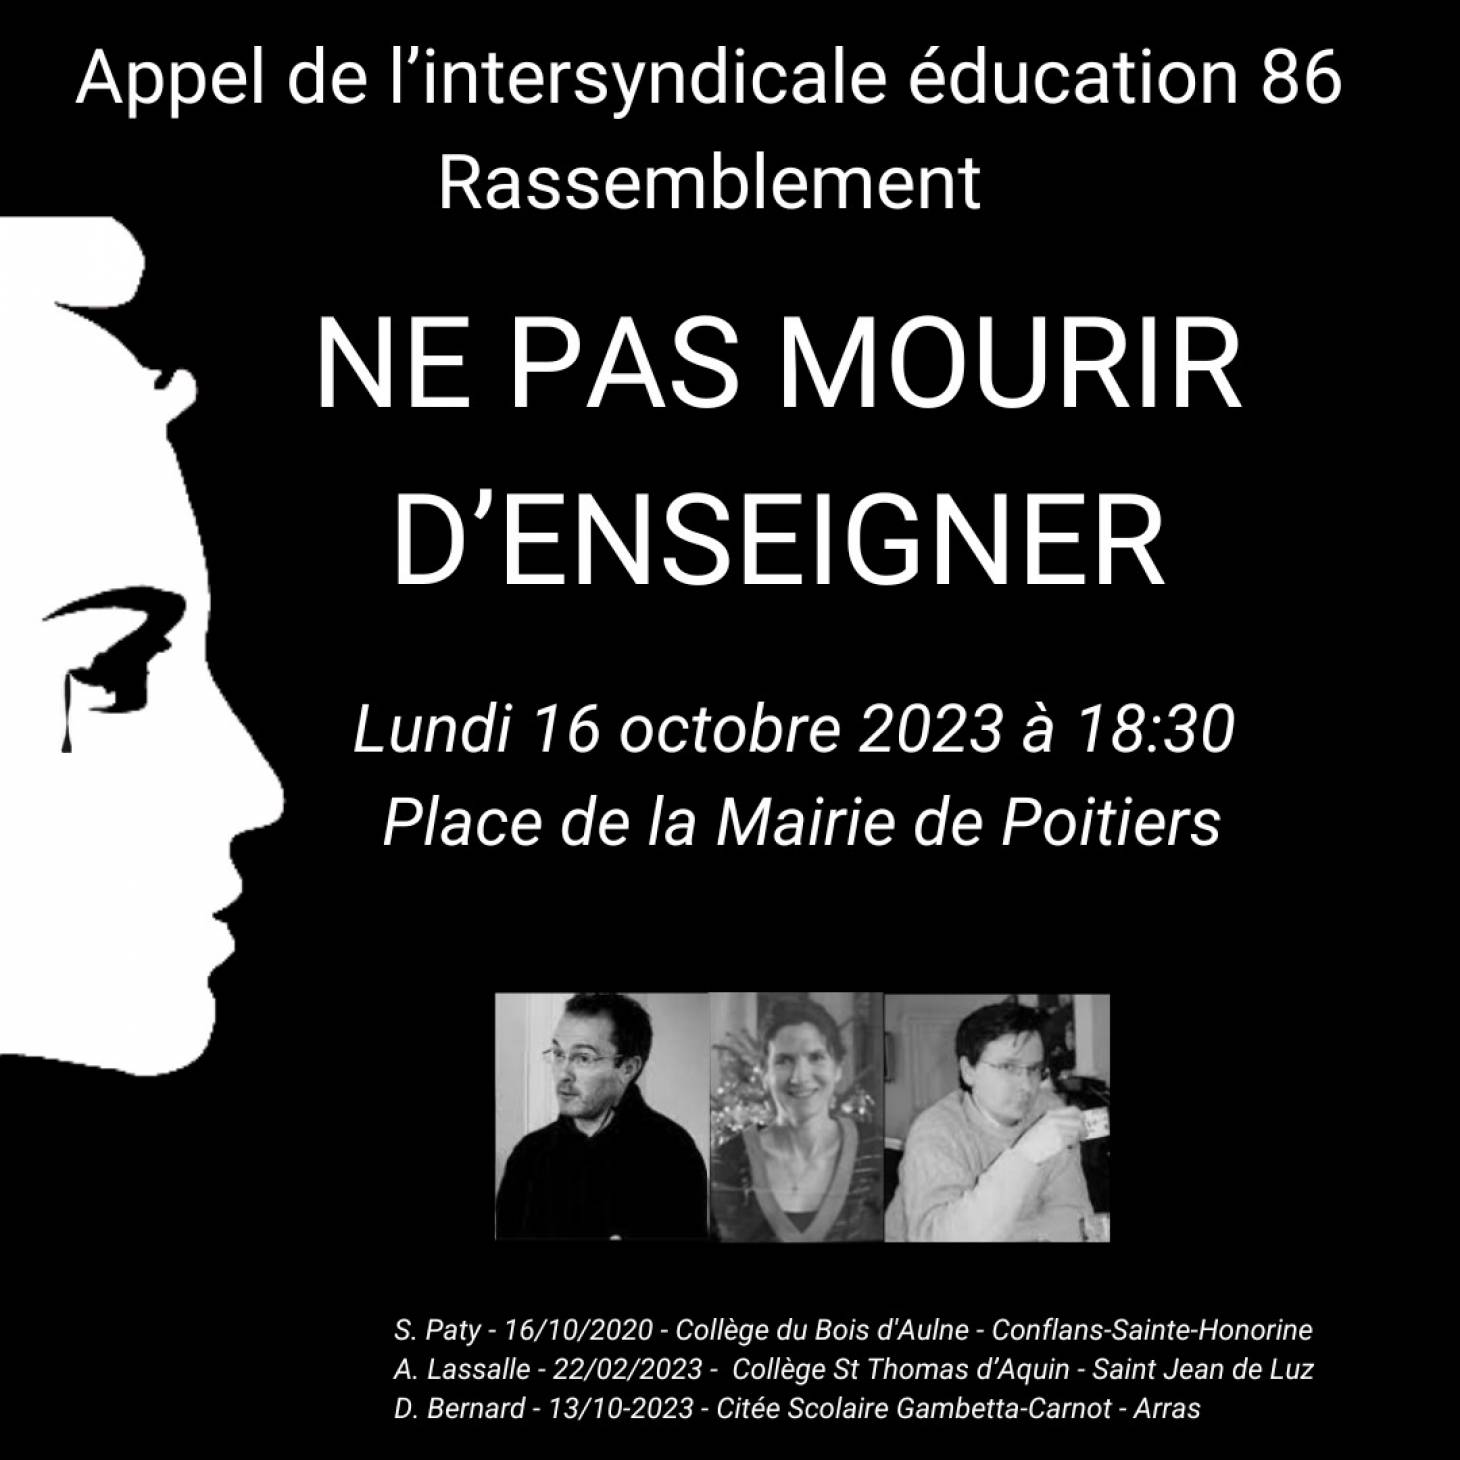 Ecole - Minute de silence et rassemblement lundi à Poitiers